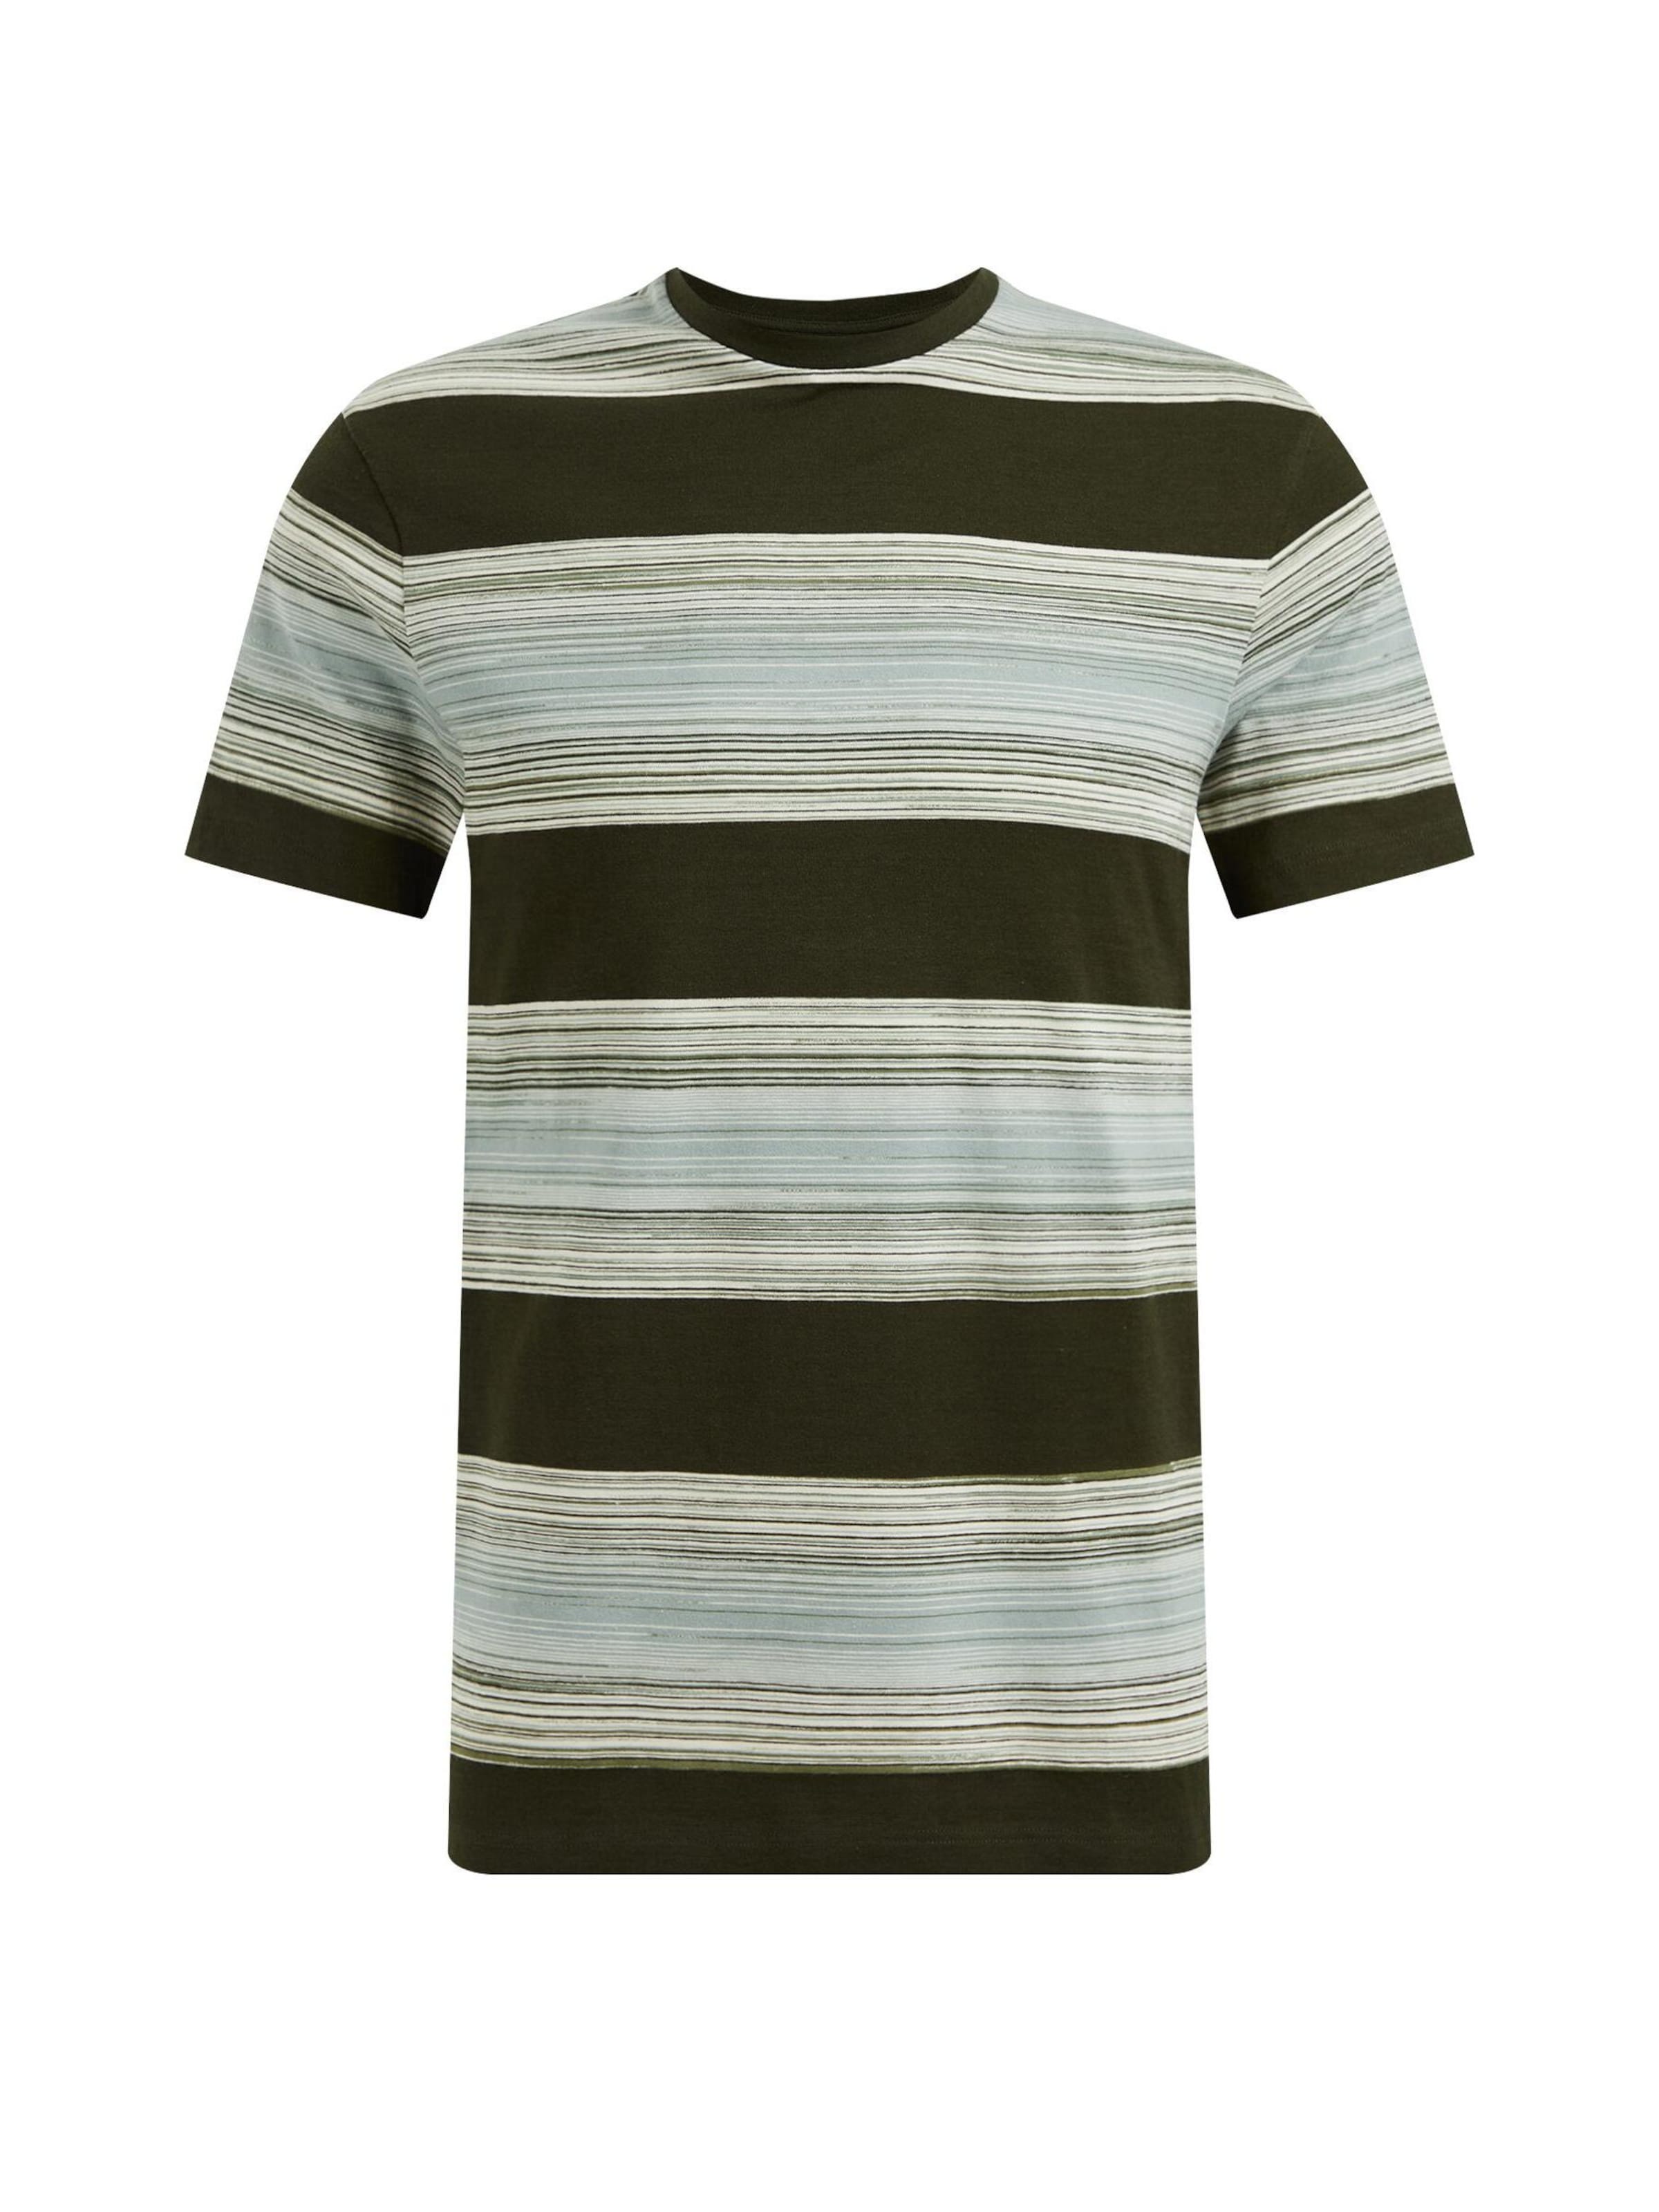 Männer Große Größen WE Fashion T-Shirt in Grün, Mint - WG52065